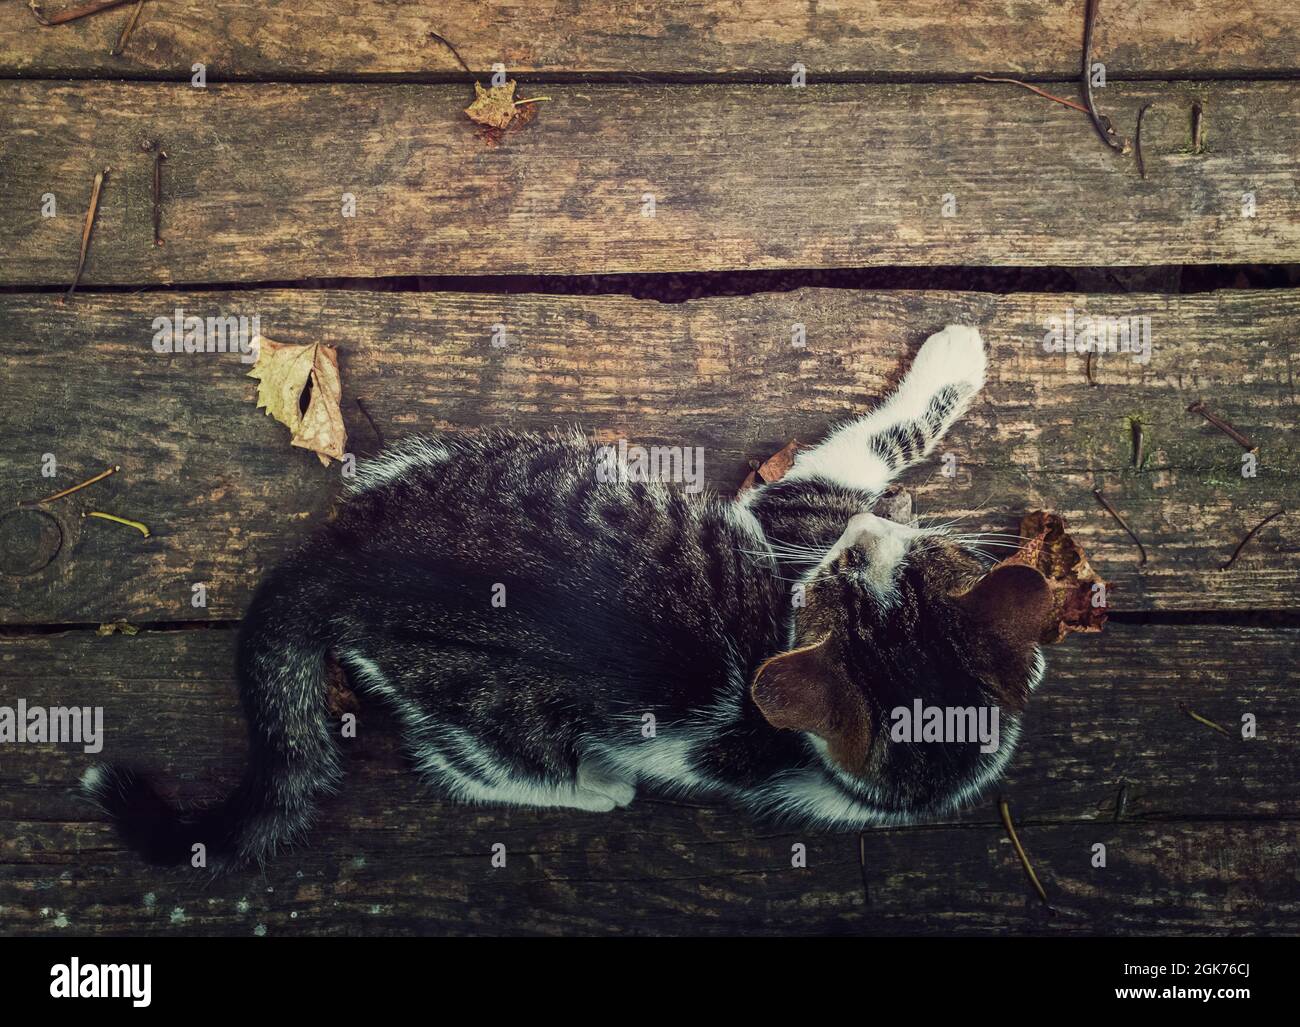 Vue de haut en bas d'un chat allongé sur une table rustique en bois entourée de feuilles sèches. Arrière-plan de la saison d'automne avec chaton sur le vieux panneau de bois avec cop Banque D'Images